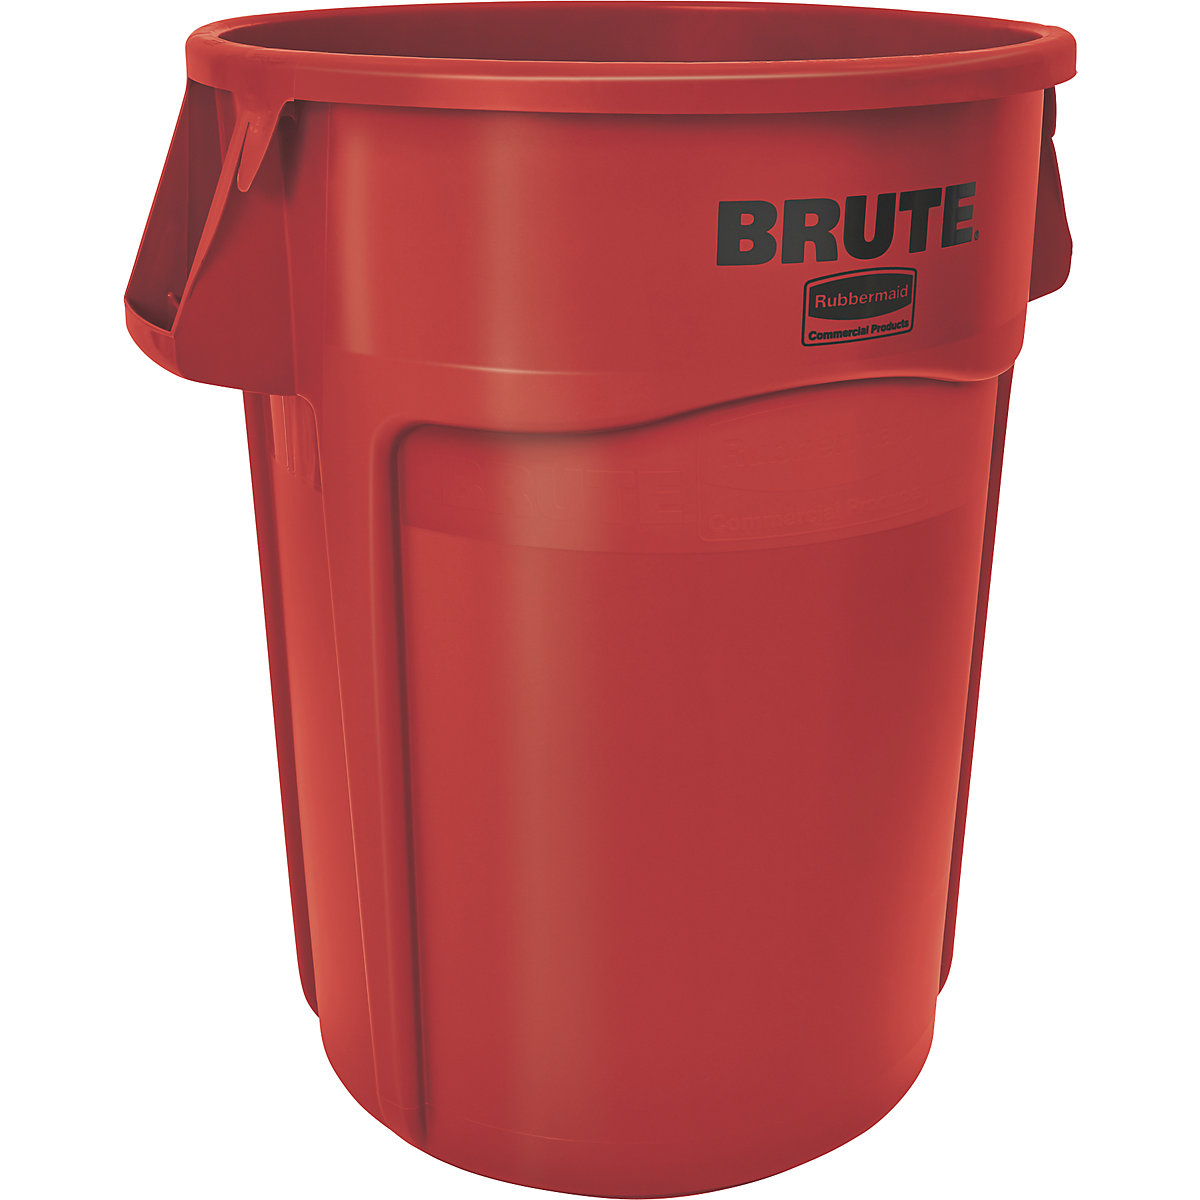 Universalcontainer BRUTE®, rund Rubbermaid, Inhalt 166 l, rot